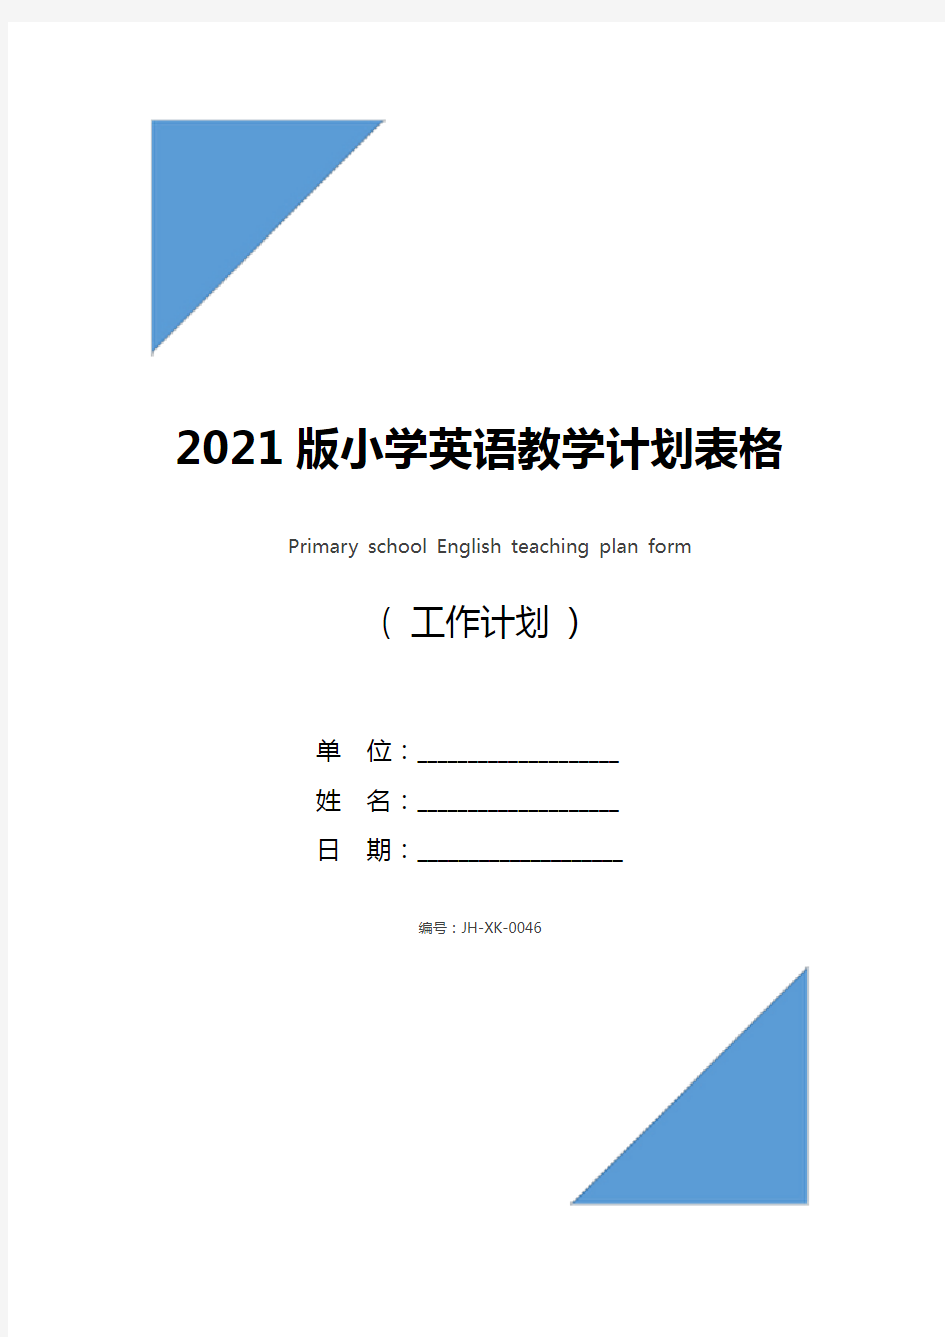 2021版小学英语教学计划表格